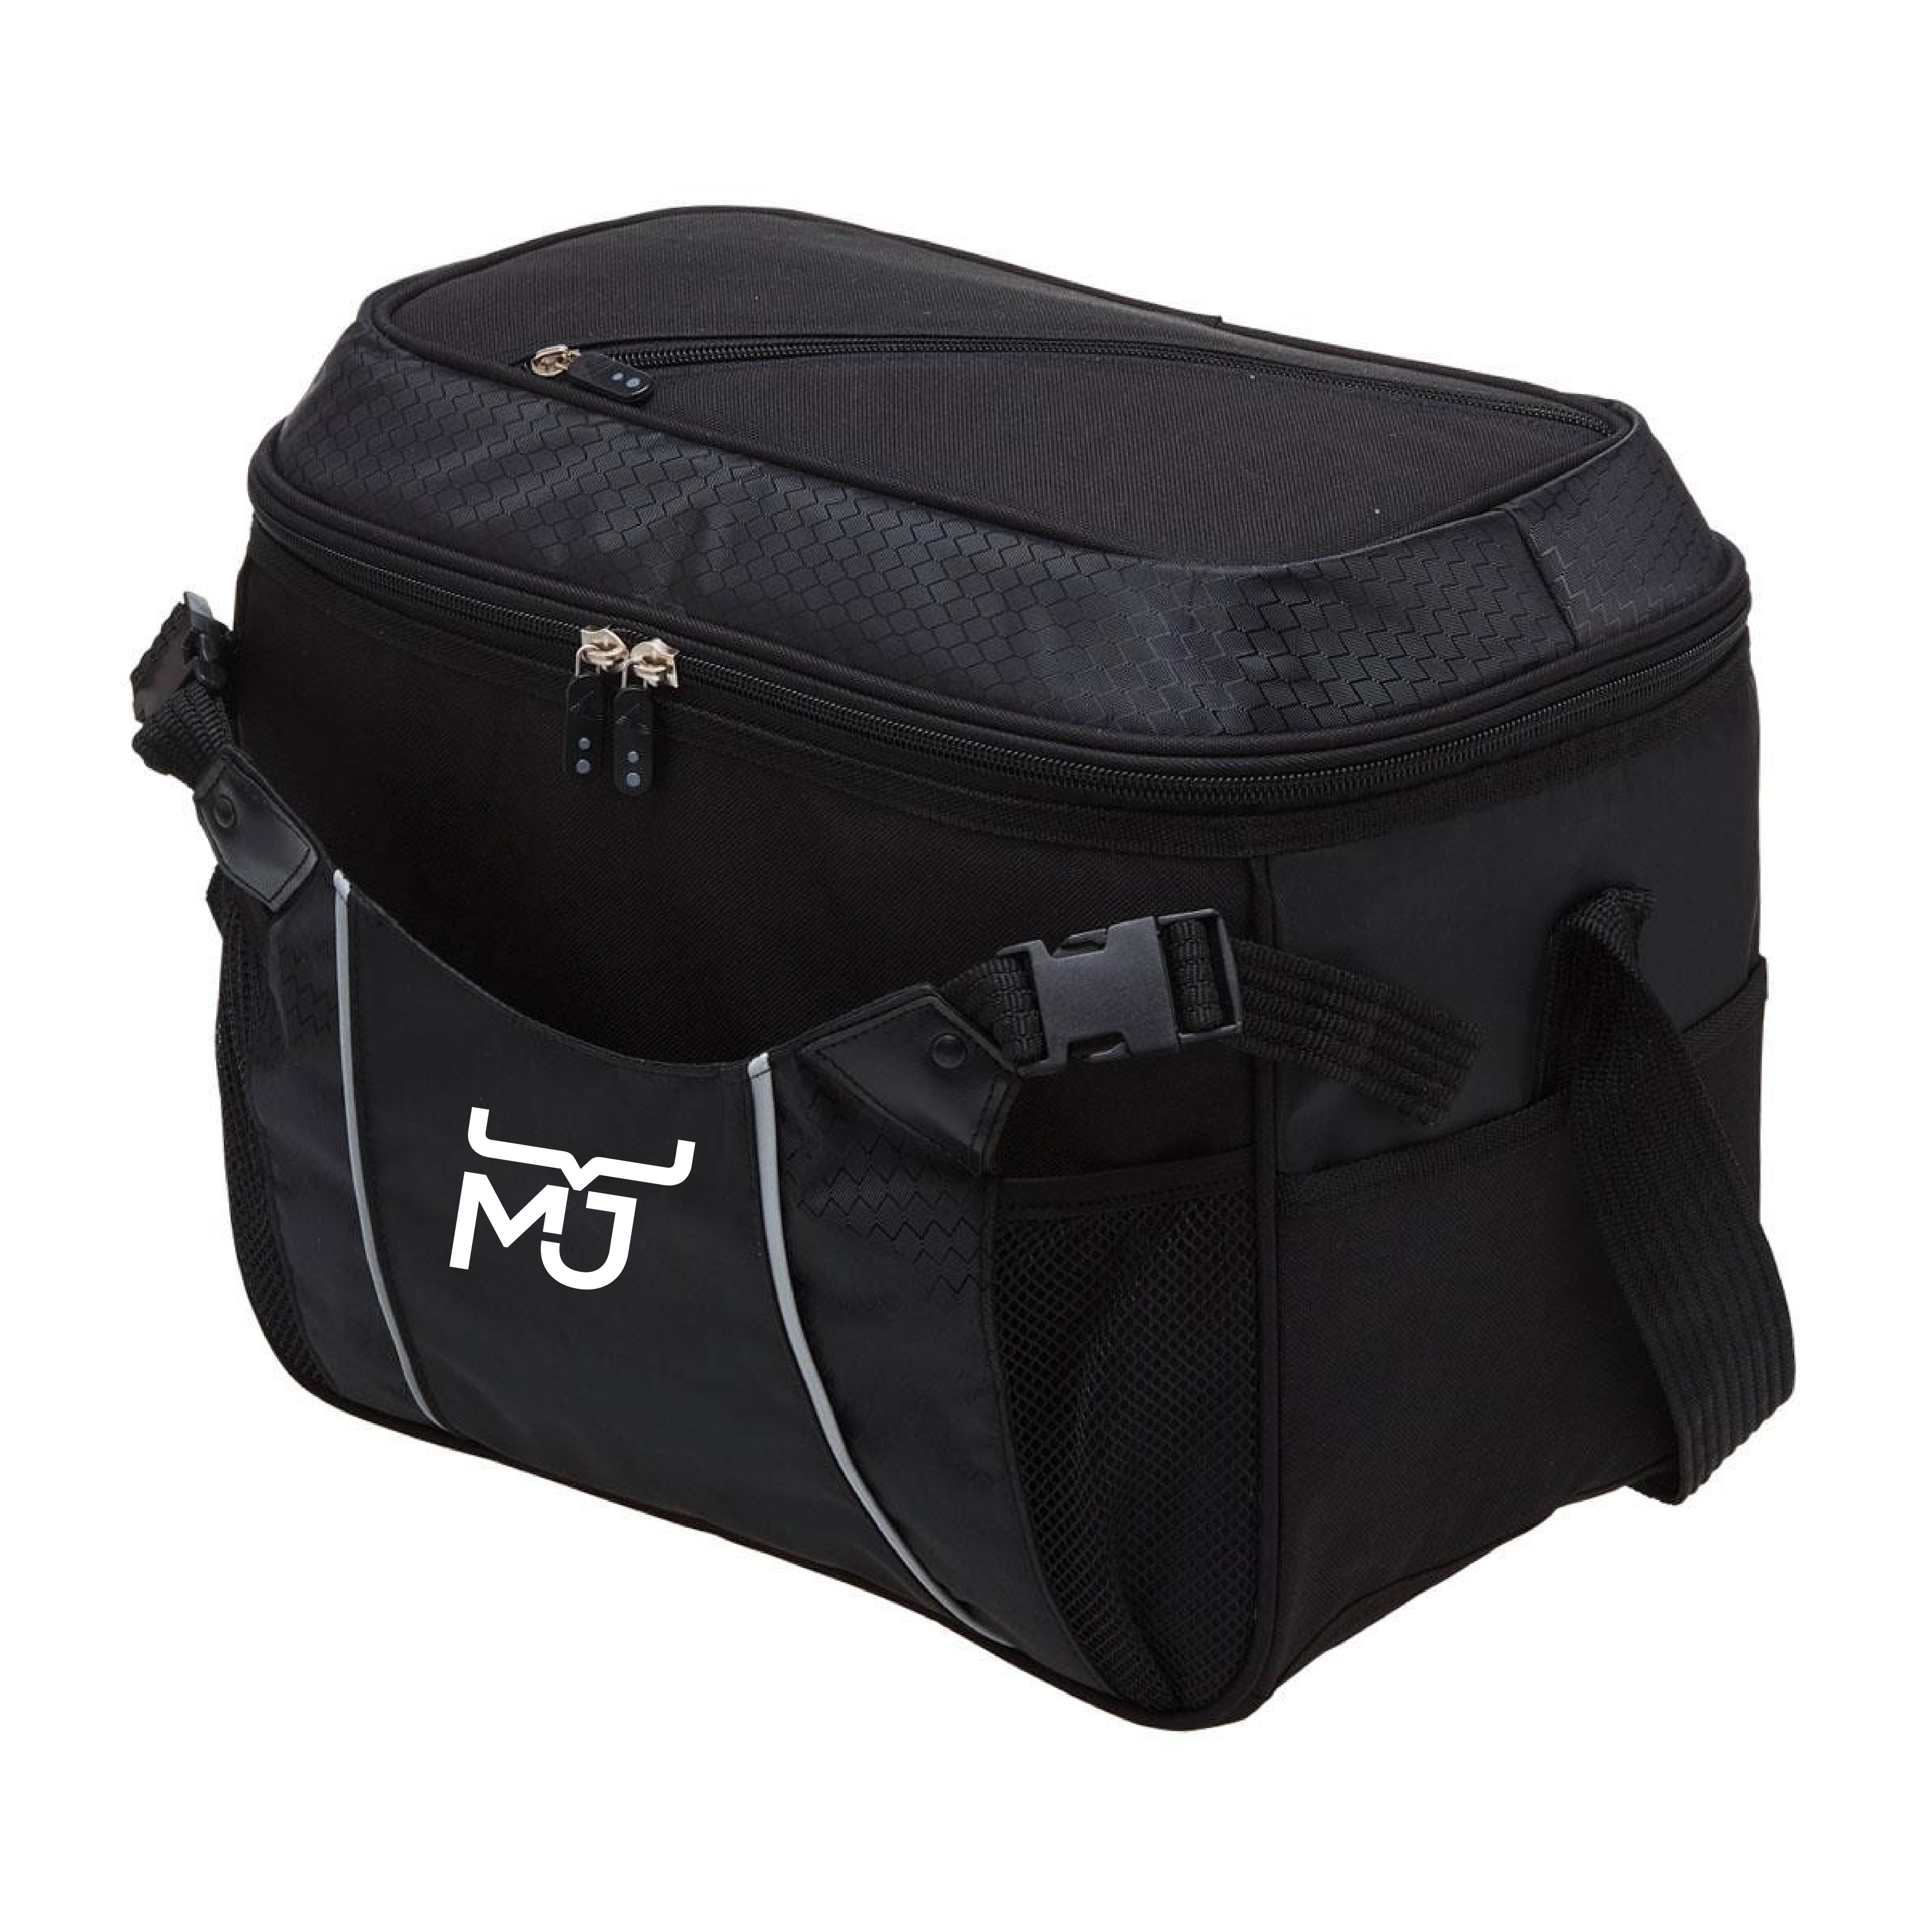 MJ Cooler Bag